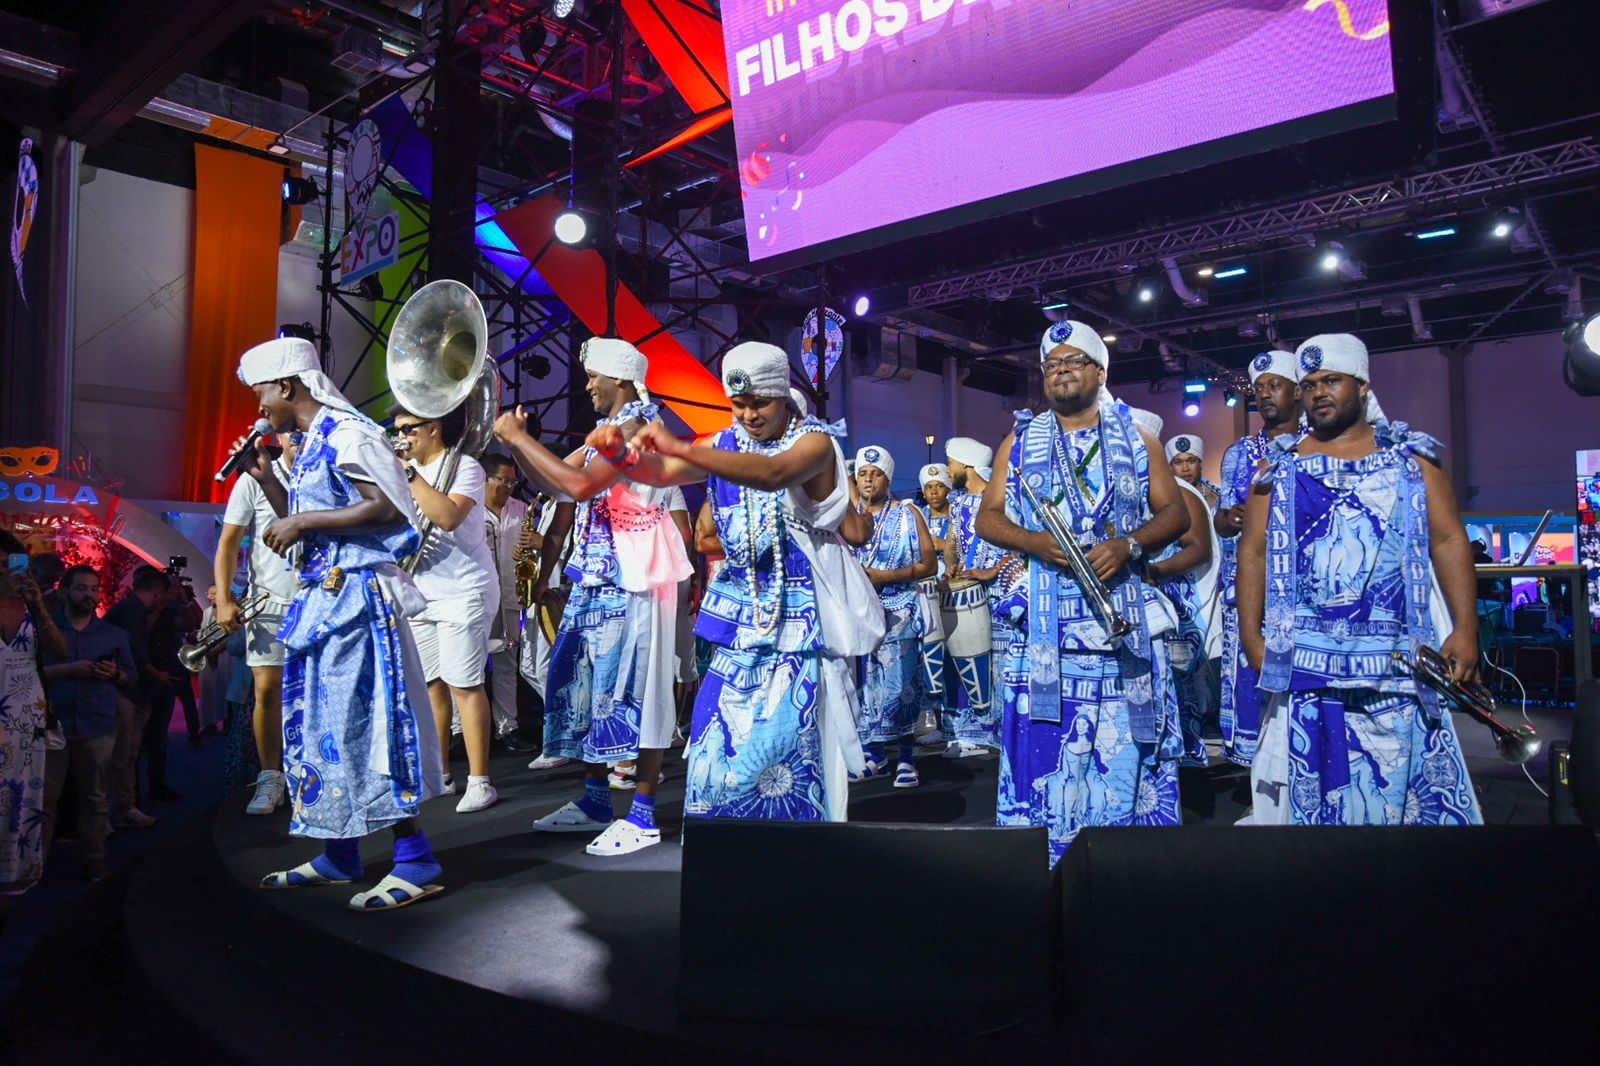 Expo Carnaval Brazil destaca a pluralidade do Carnaval brasileiro com intervenções artísticas especiais